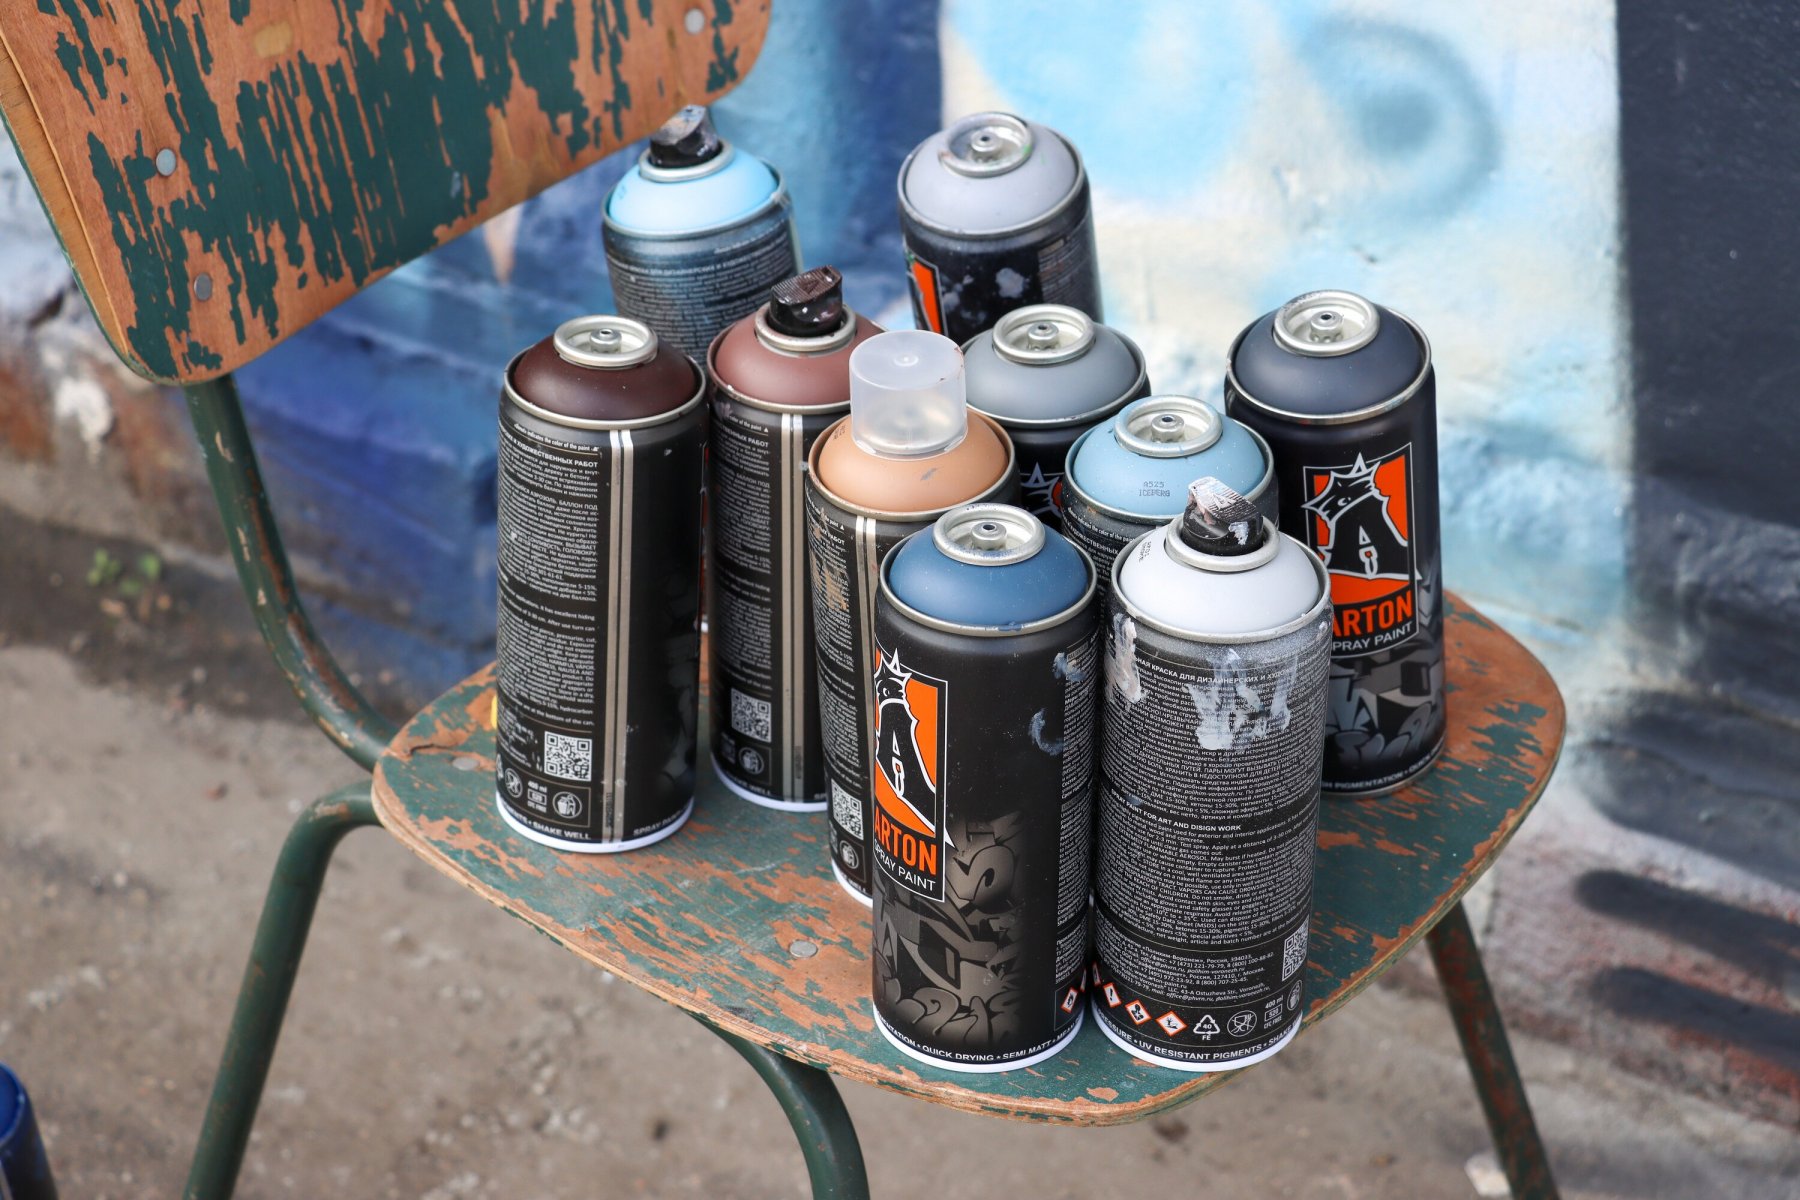 Около 3,5 тысячи несанкционированных граффити ликвидировали этой зимой в Подмосковье